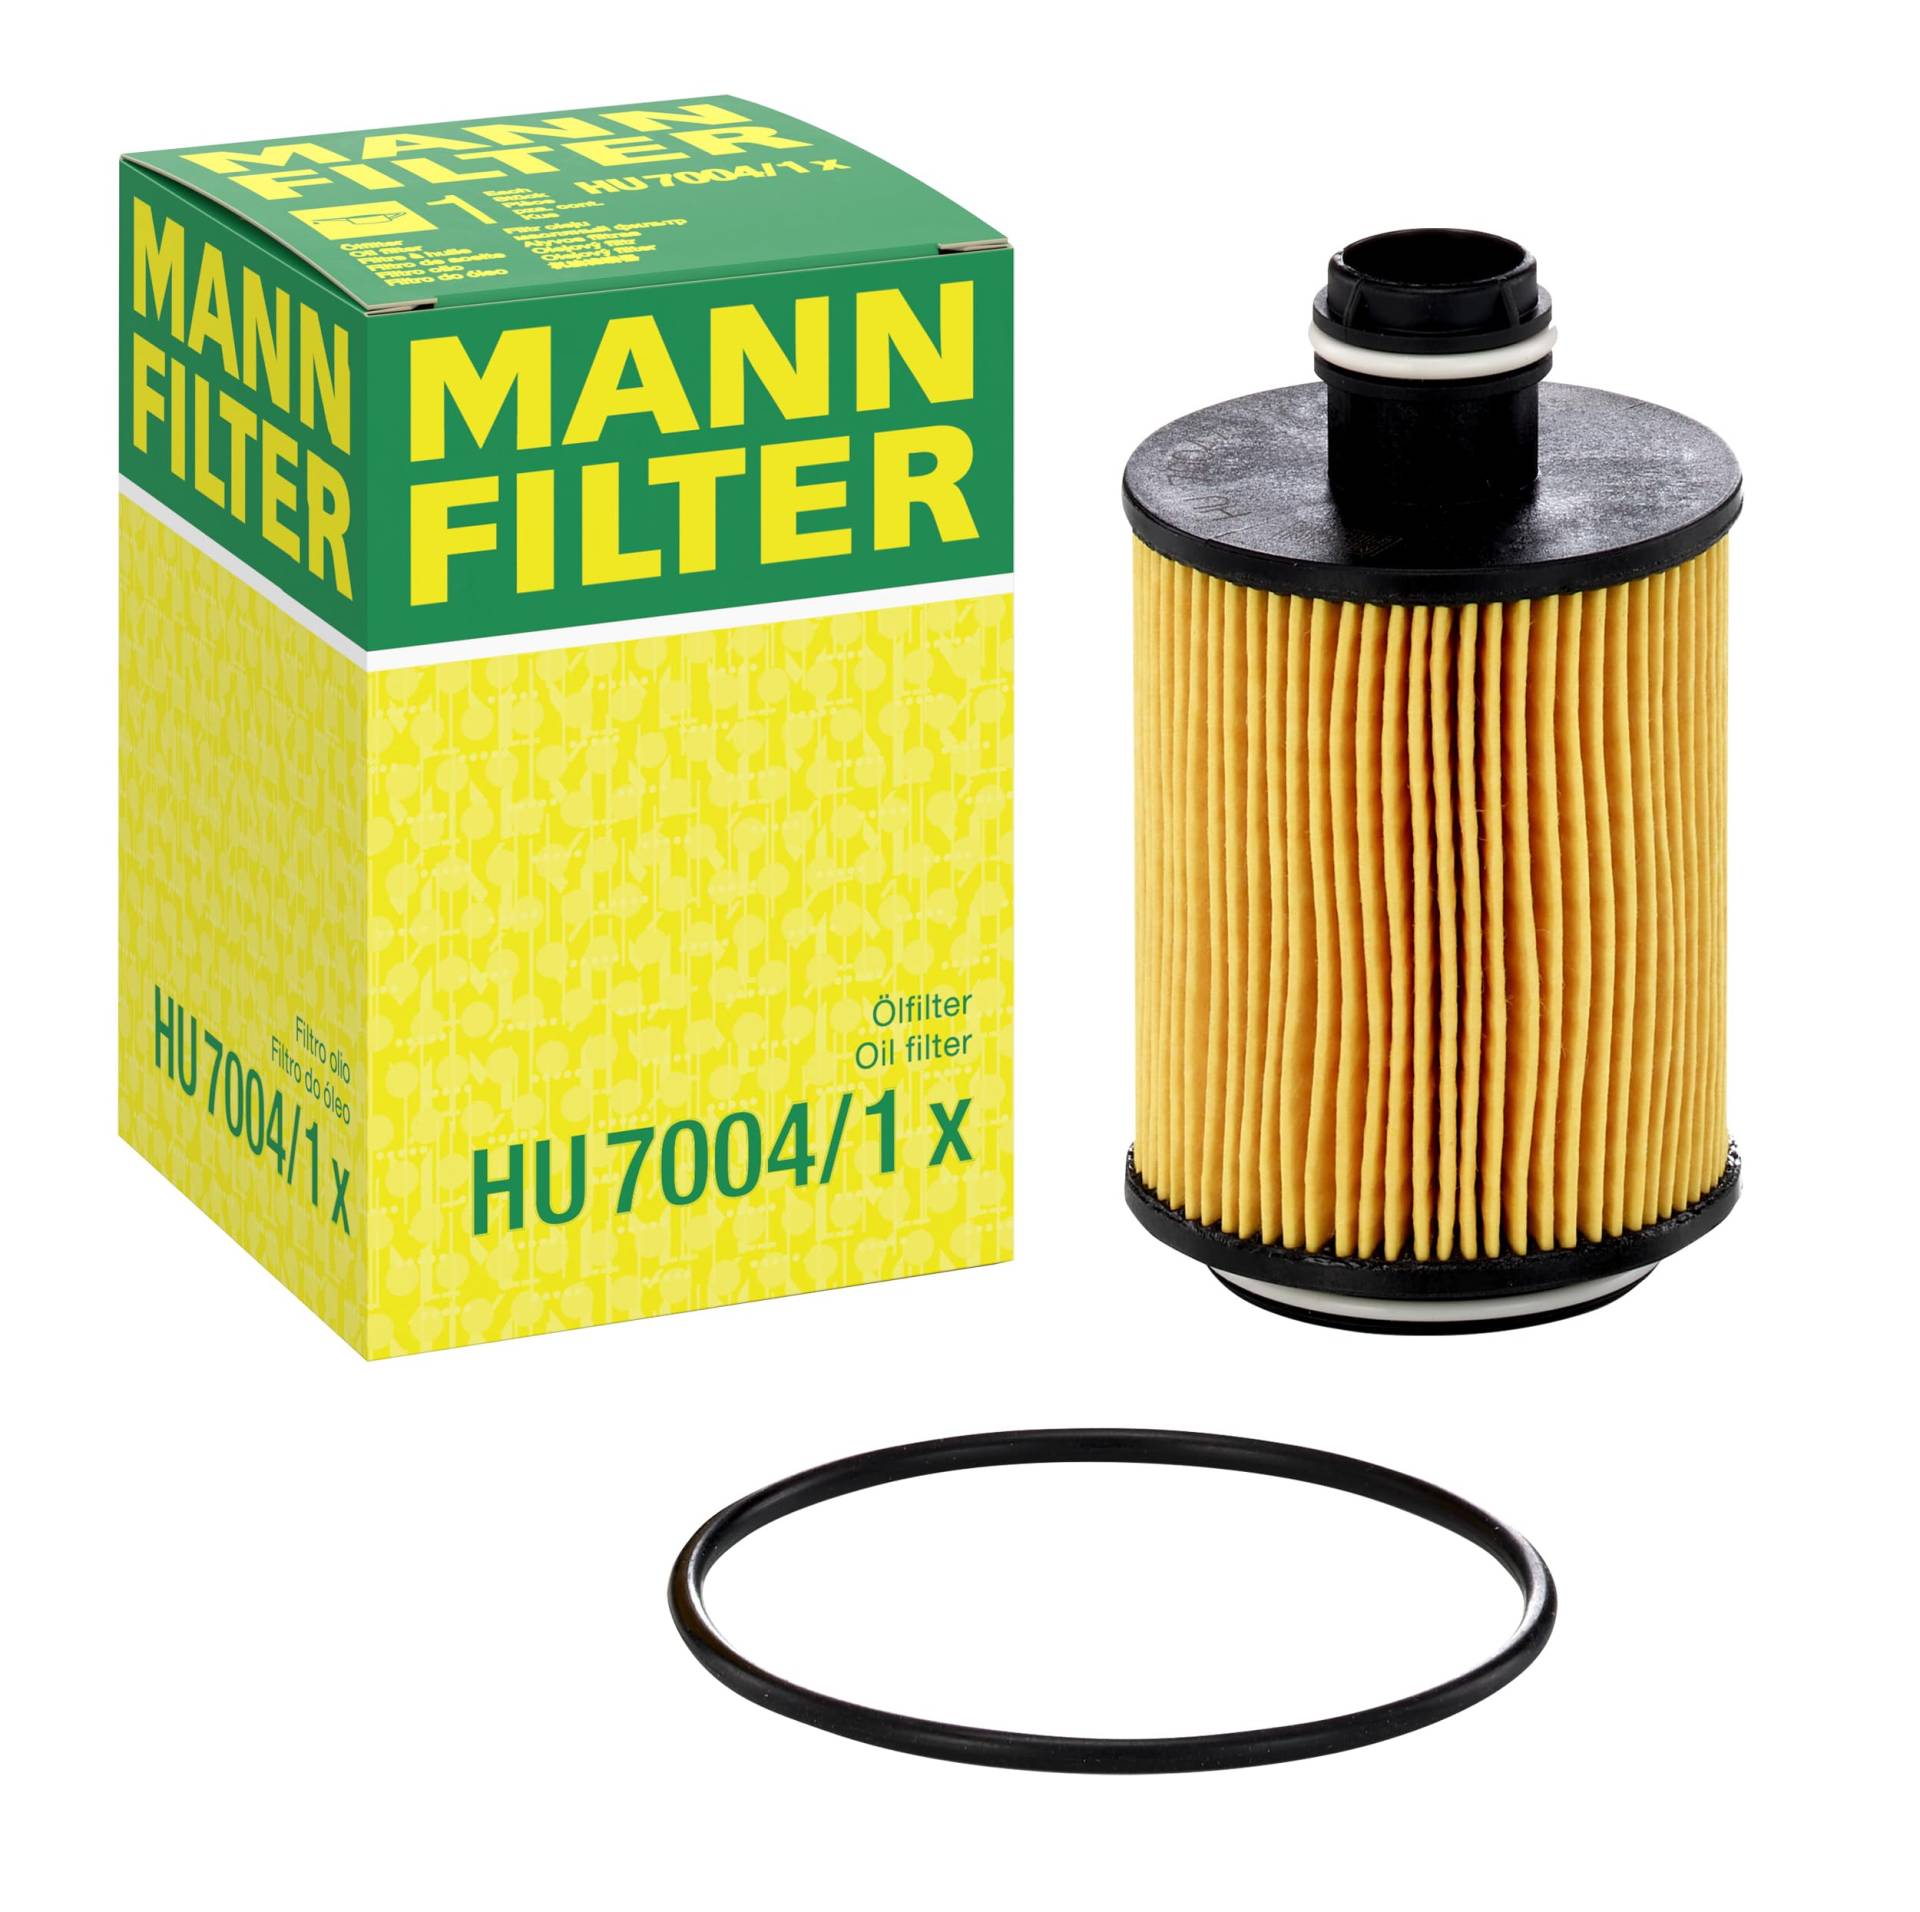 MANN-FILTER HU 7004/1 x Ölfilter – Ölfilter Satz mit Dichtung / Dichtungssatz – Für PKW von MANN-FILTER